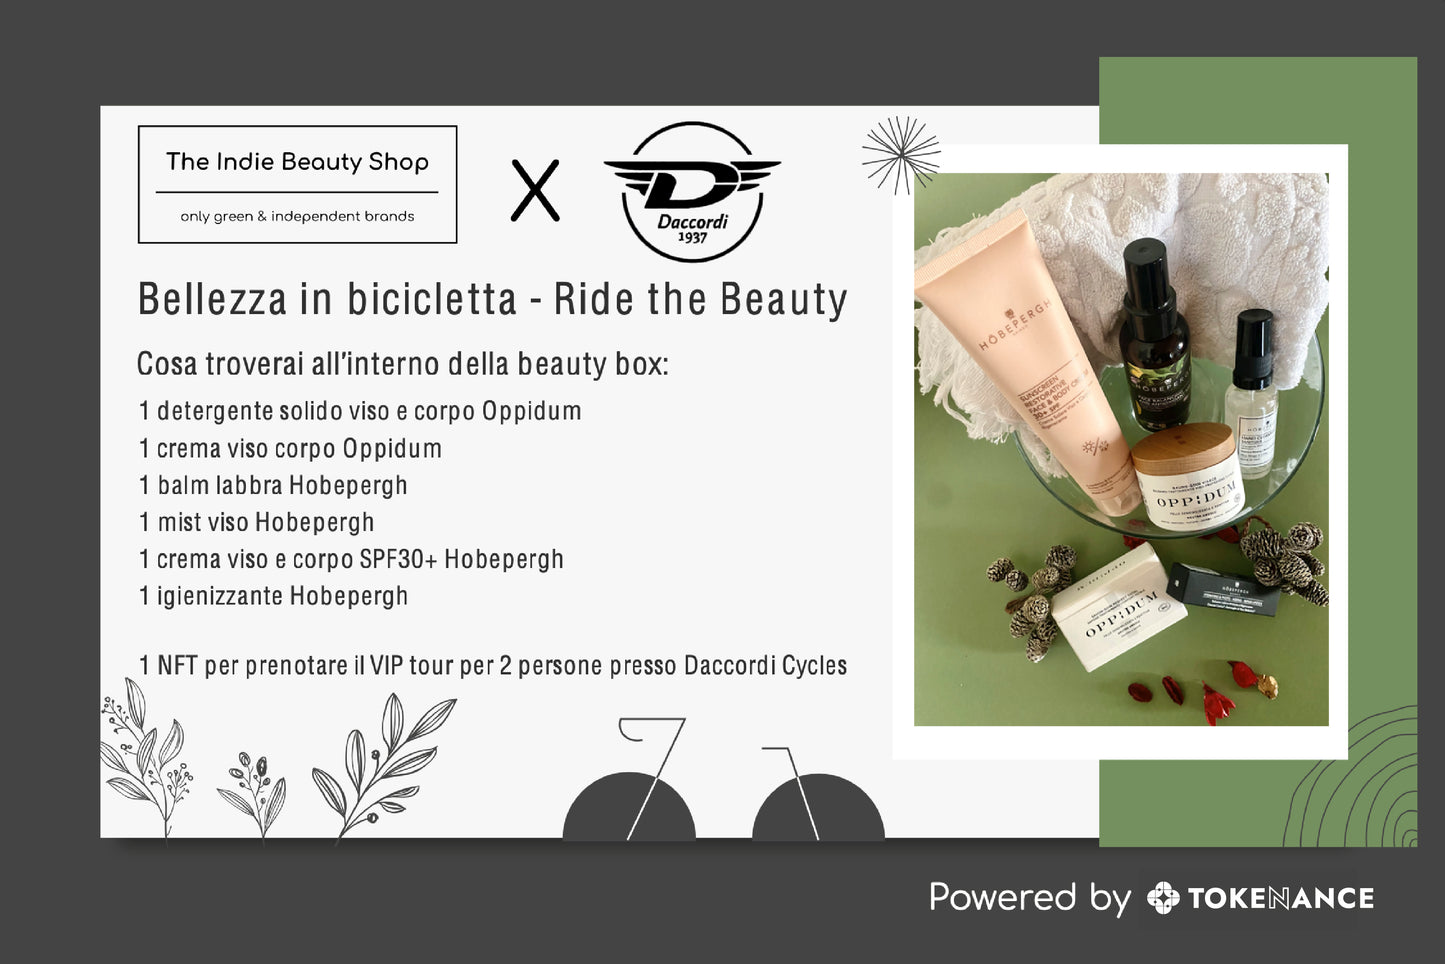 The Indie Beauty Shop - Beauty Box unisex in Edizione Limitata + Esperienza Esclusiva